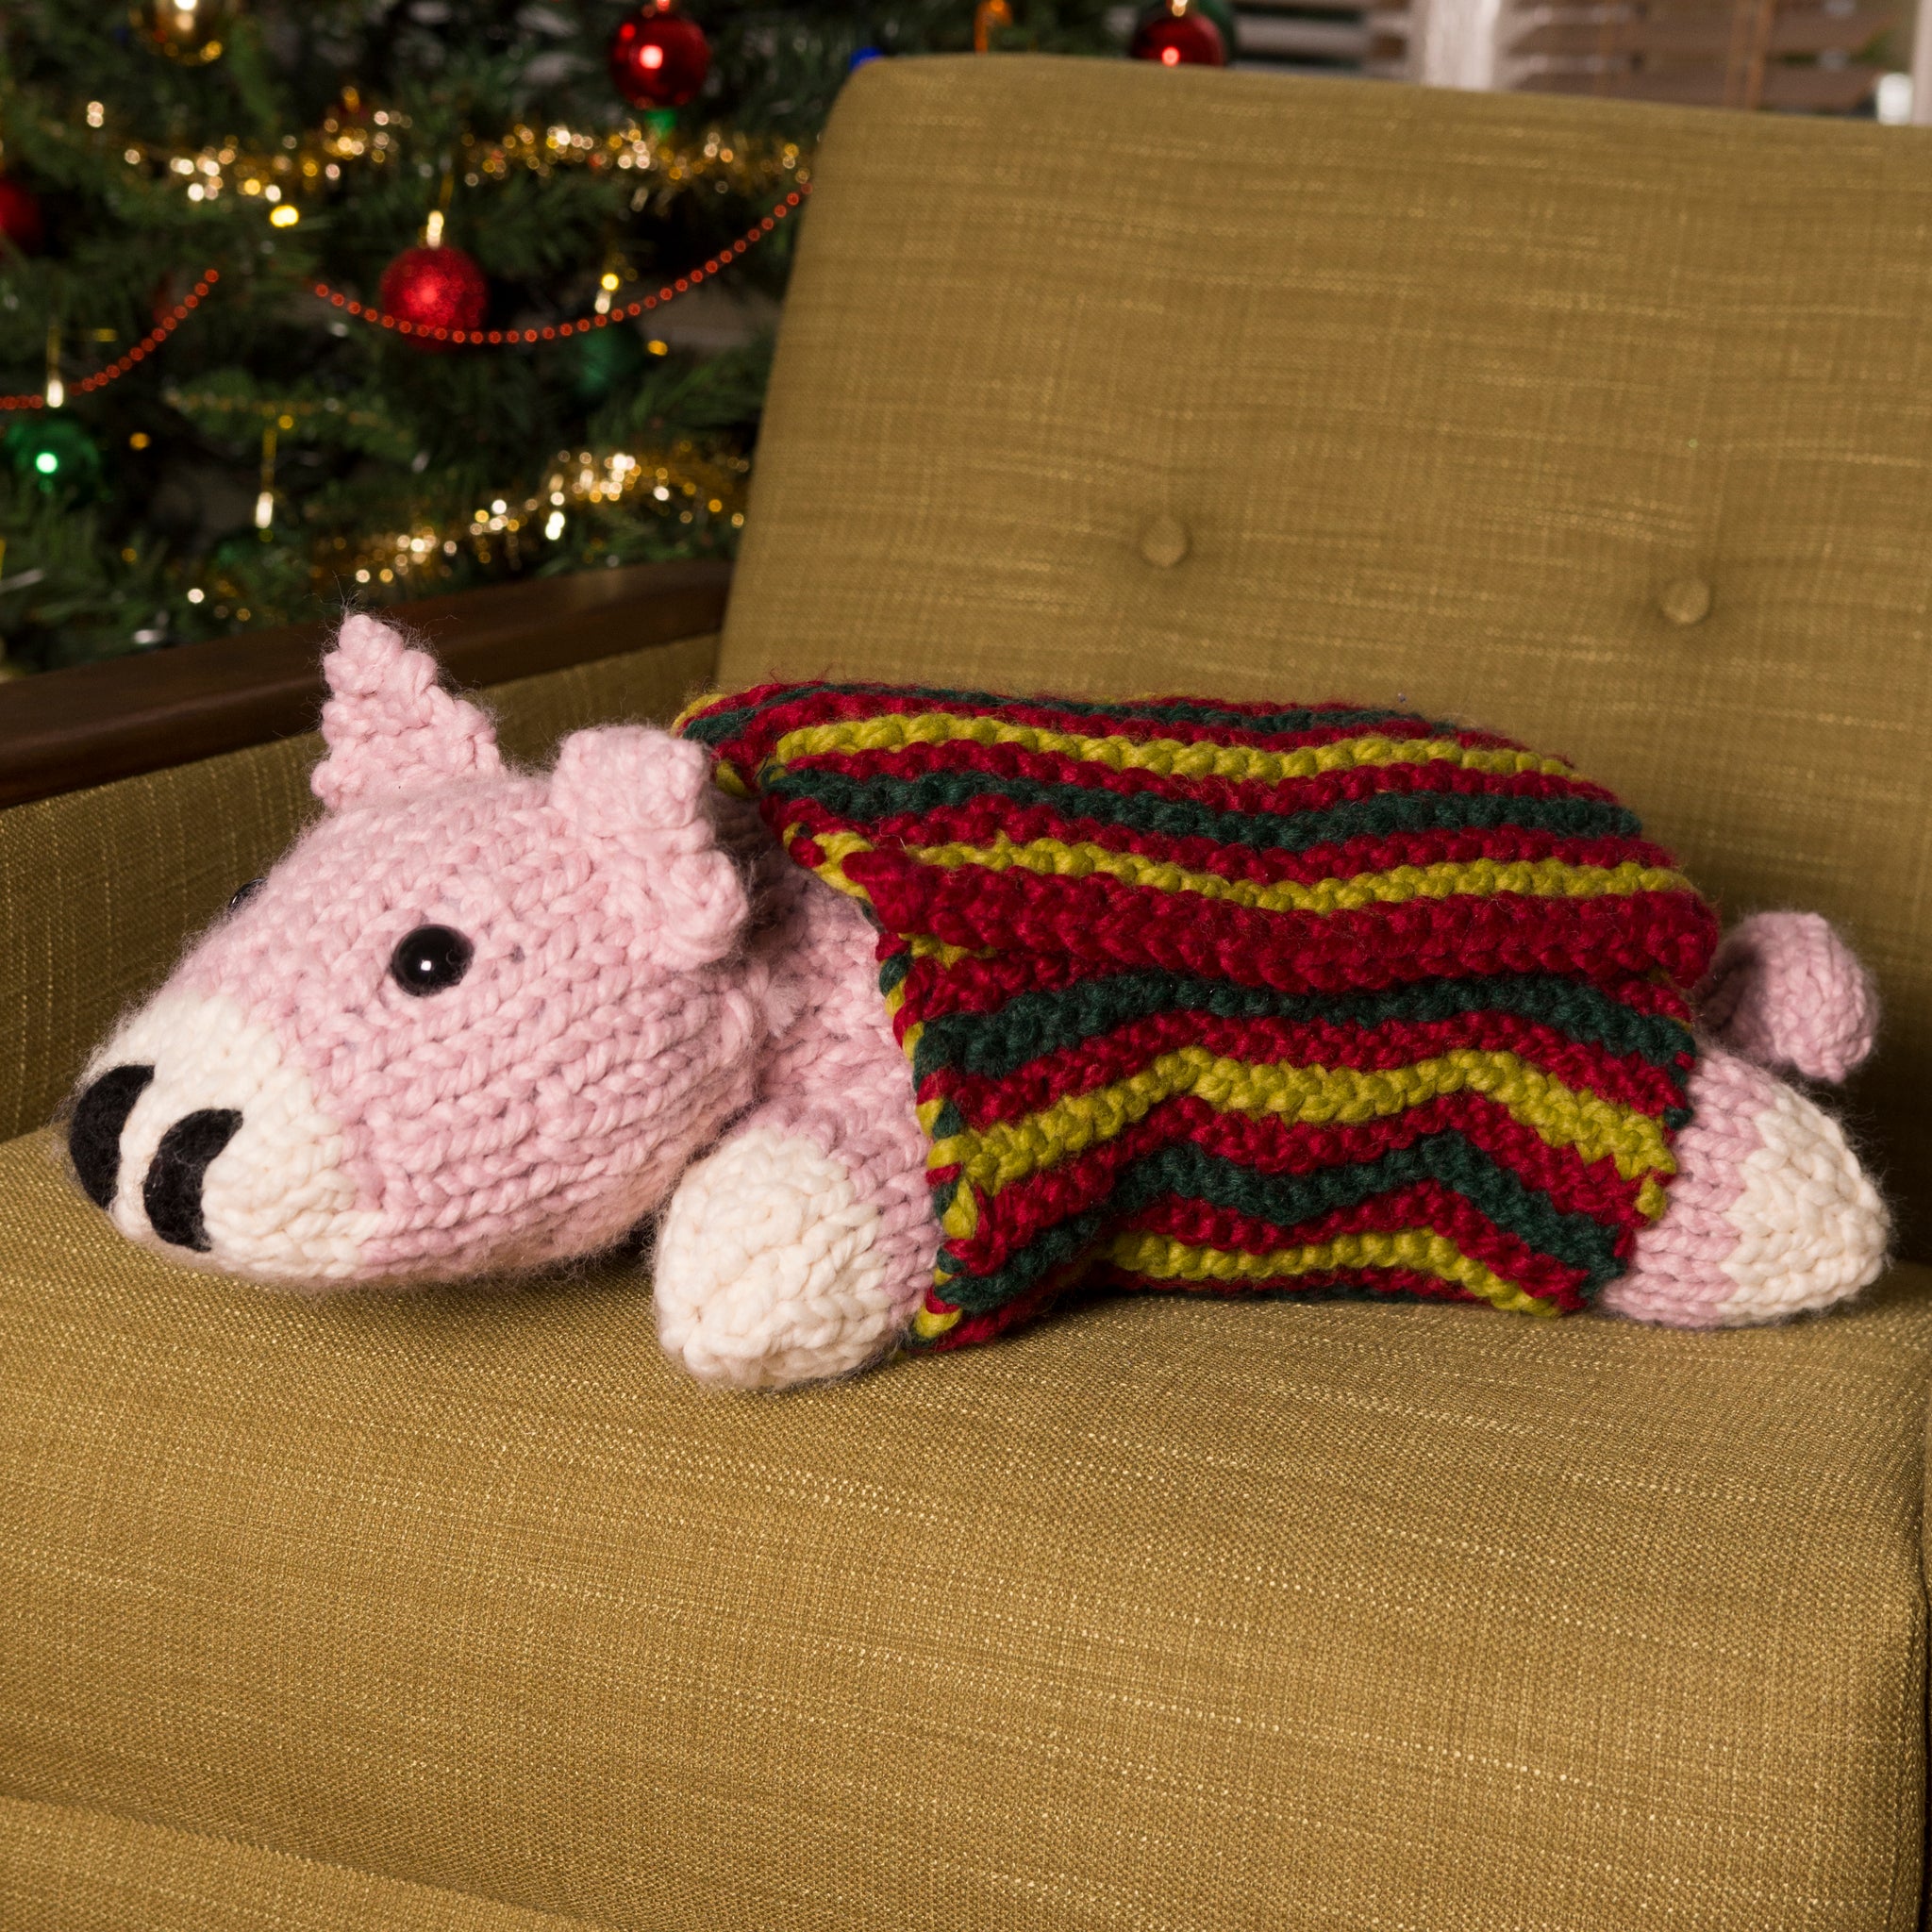 Giant Pig in Blanket Knitting Kit